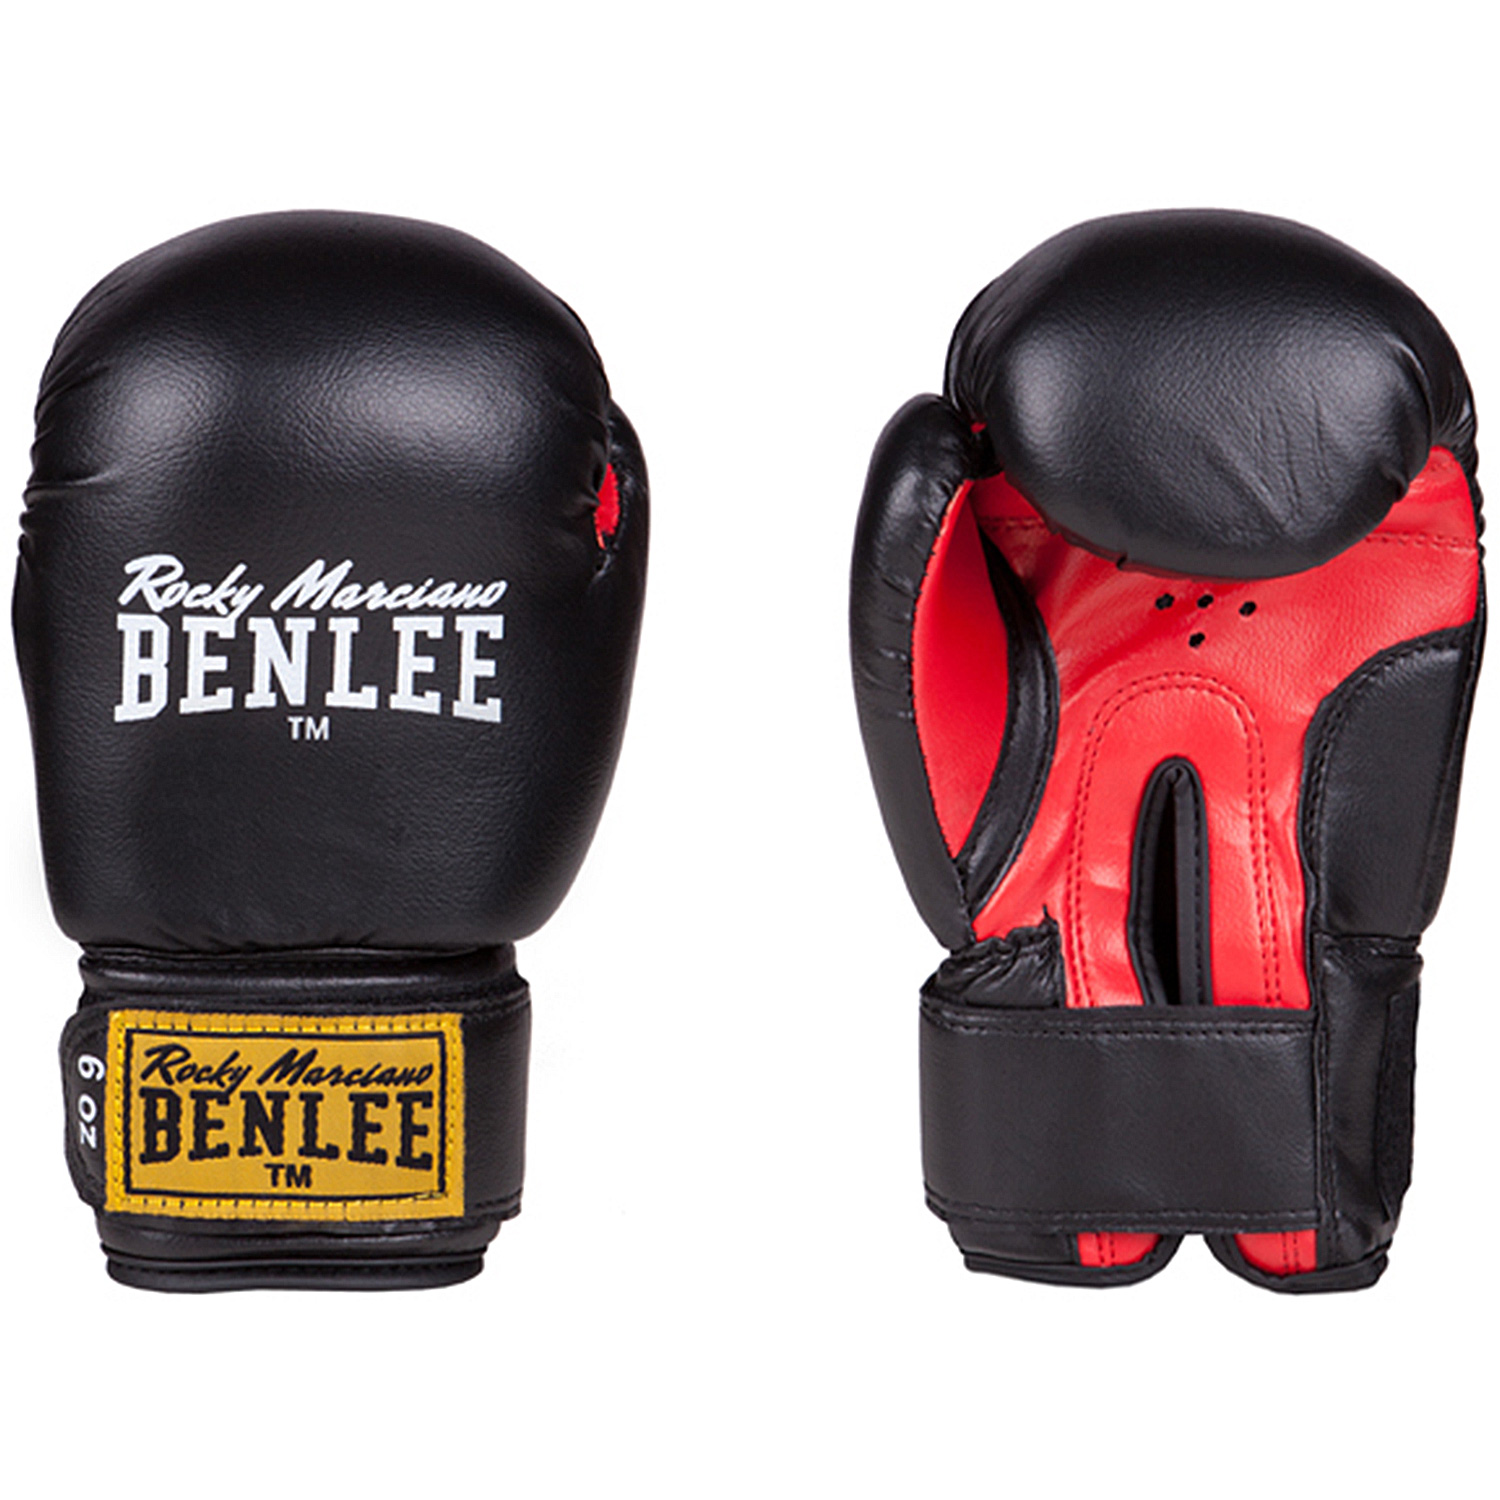 Set De Boxeo Benlee Punchy  MKP